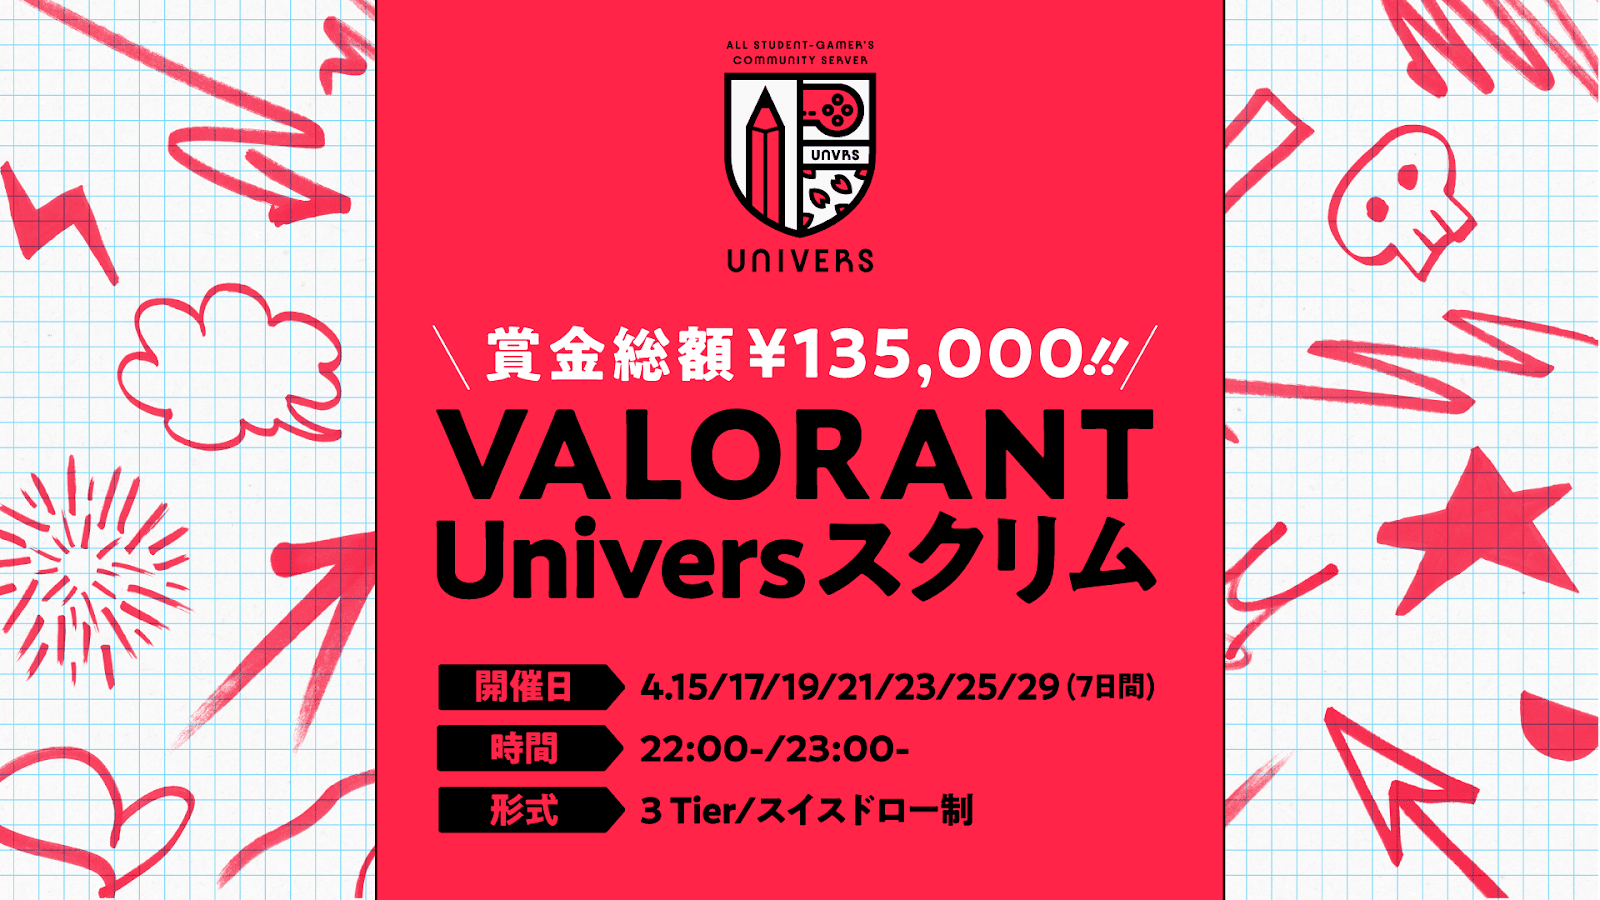 18歳以上の学生が対象の「VALORANT Univers スクリム 4月度」が開催。賞金総額13.5万円、ランクに応じた3Tier制を導入。